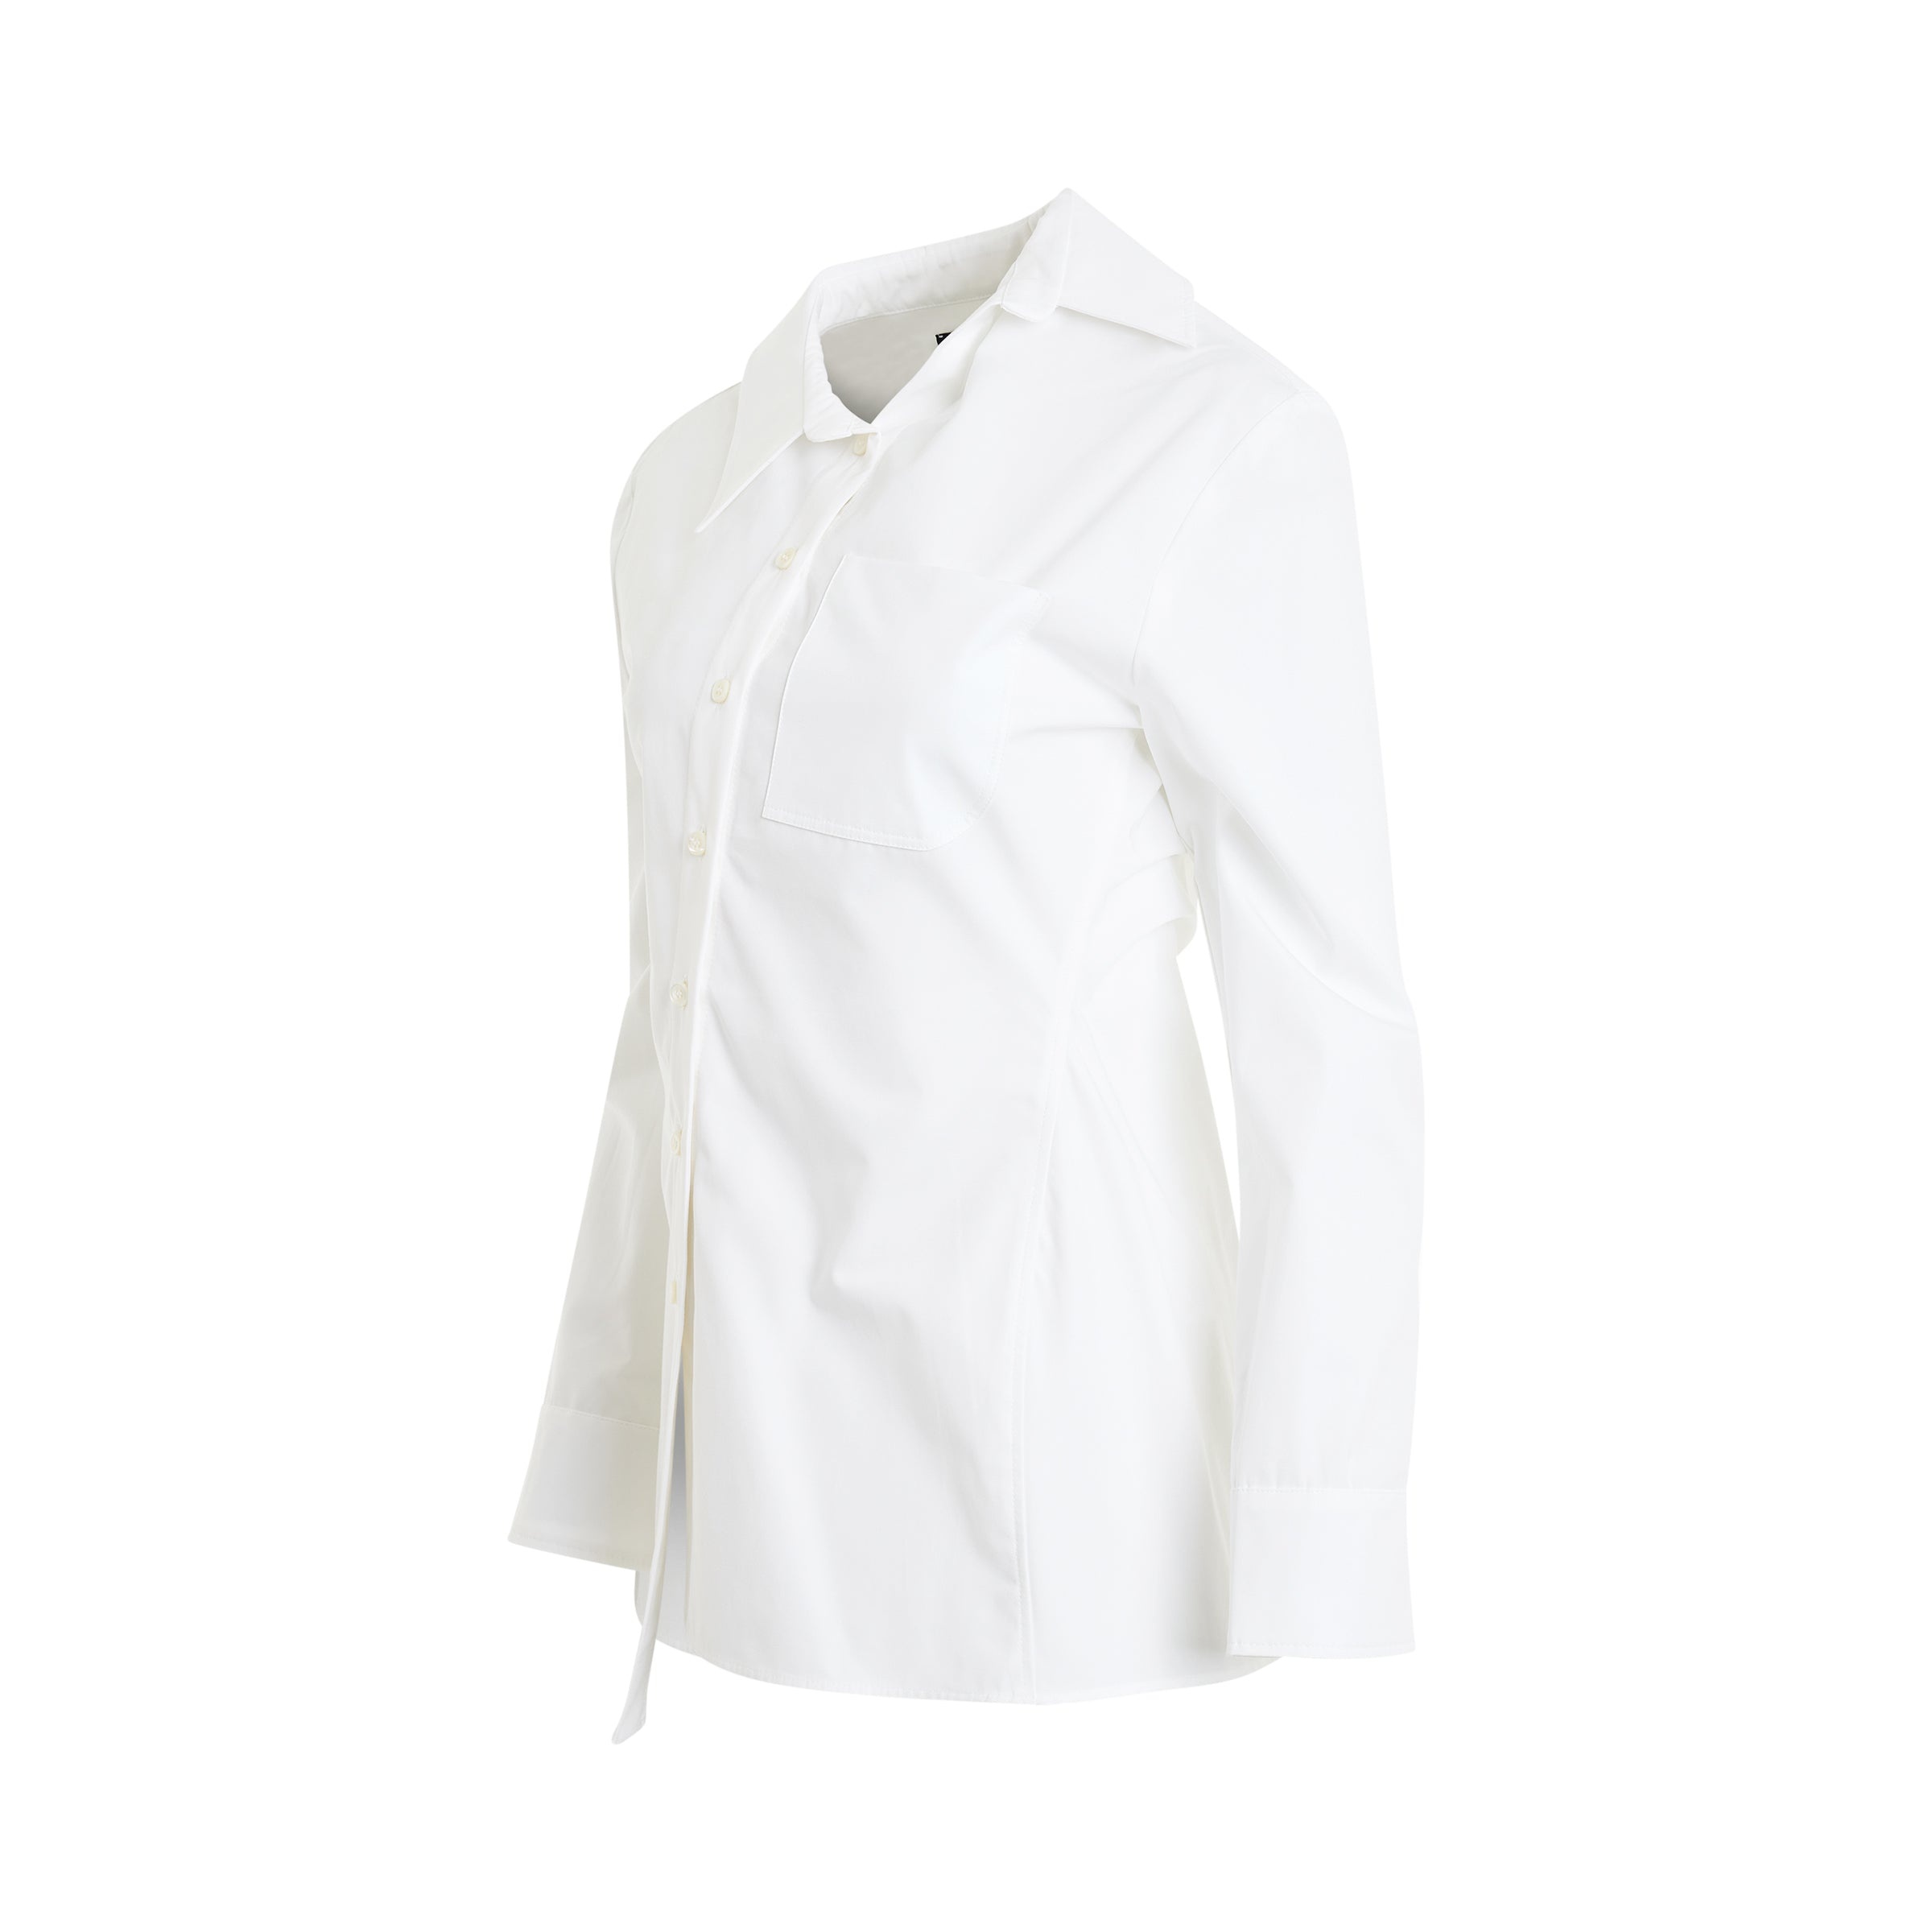 Pablo Asymmetric Shirt in White - 2